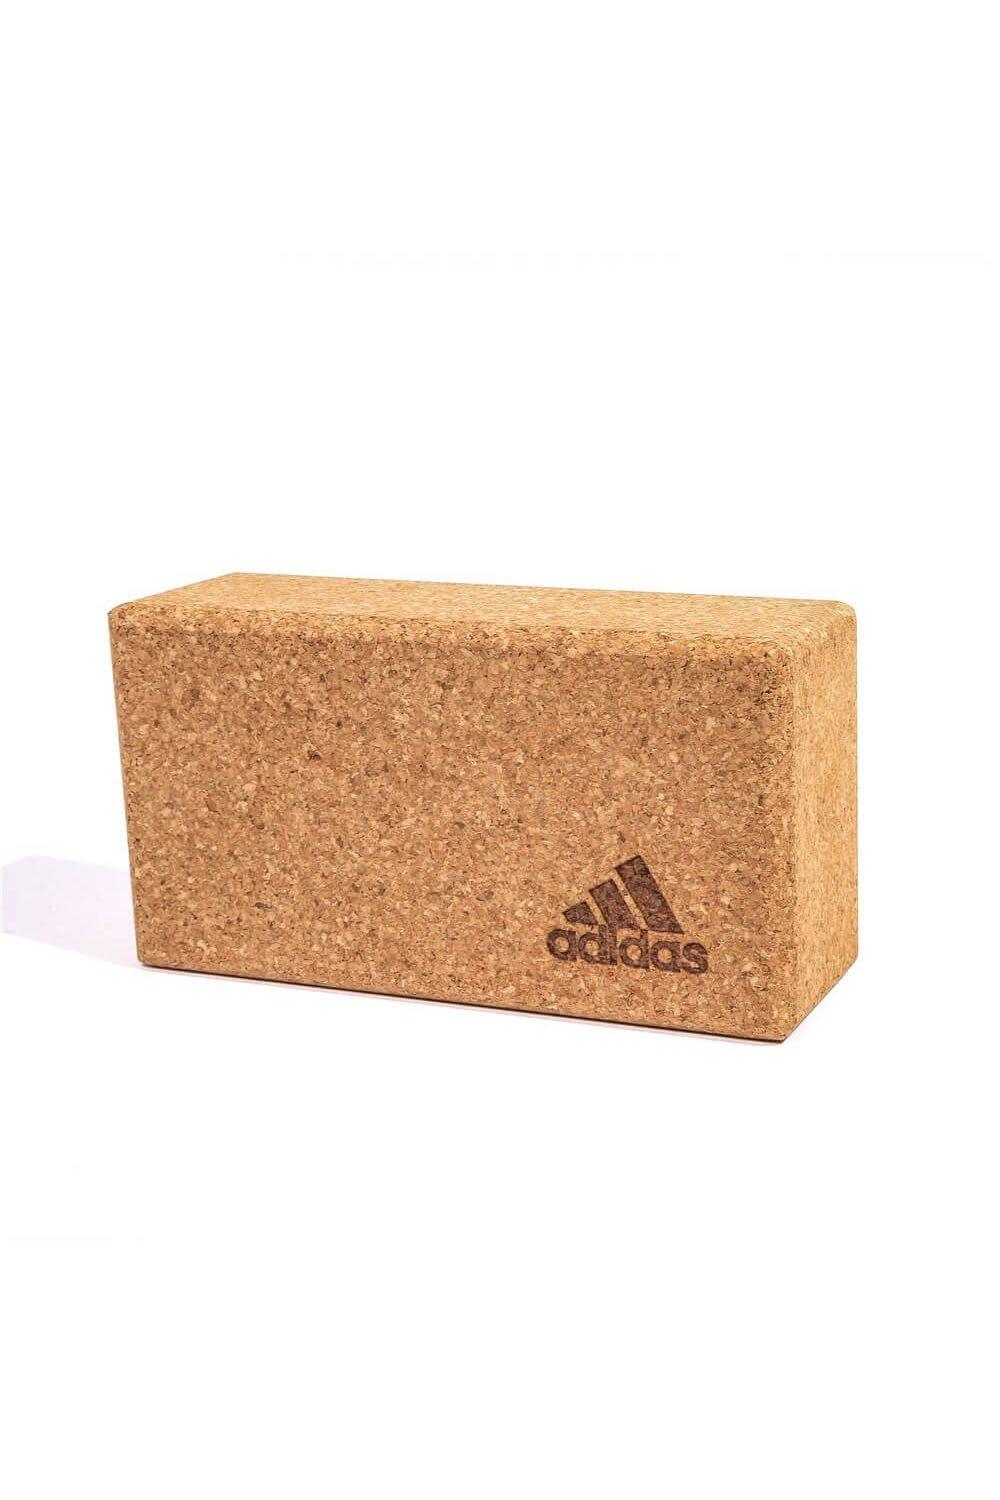 Adidas Cork Yoga Block Brick|brown